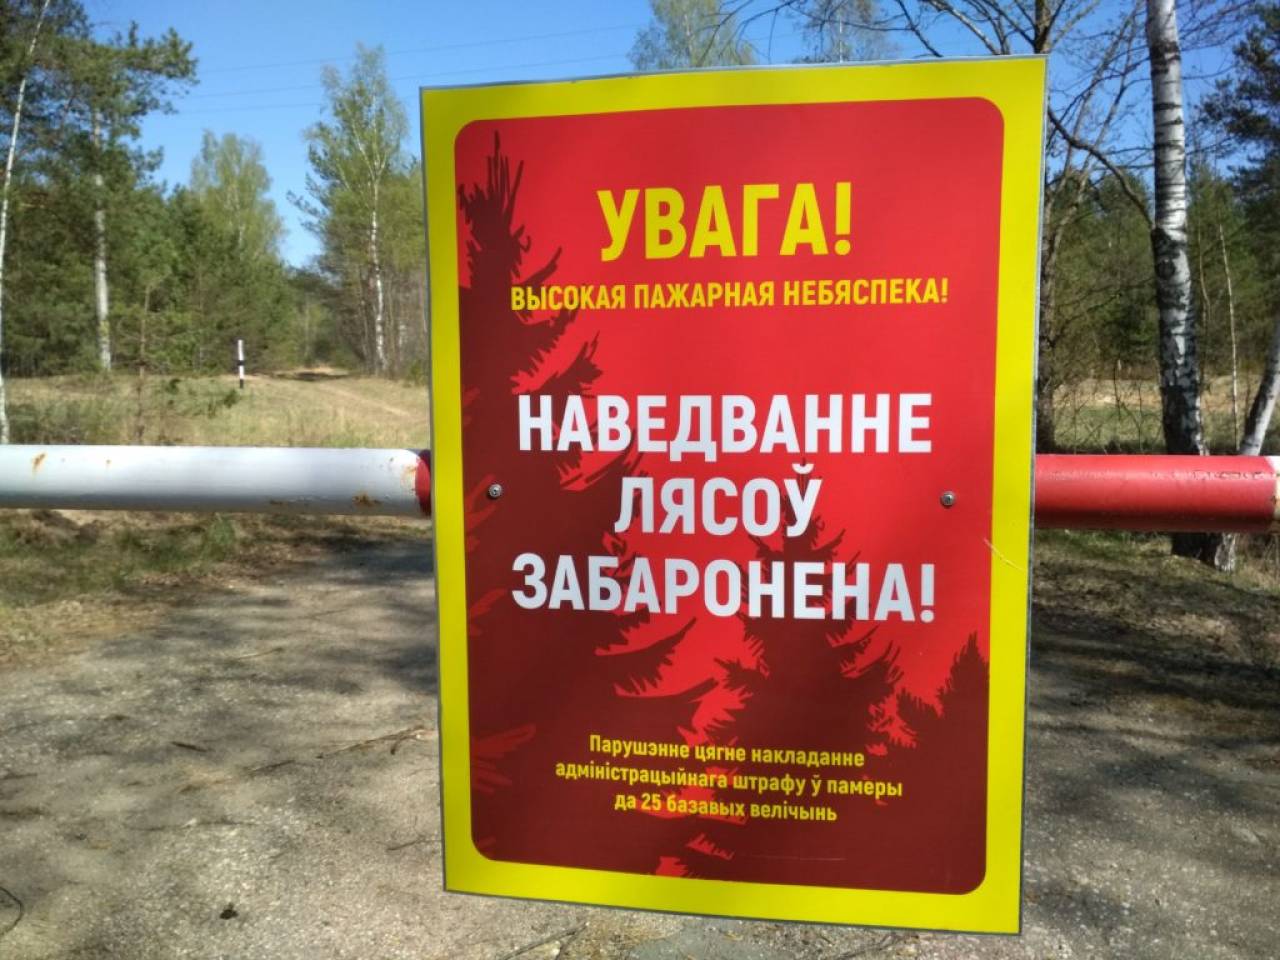 Вот и все: почти по всей Гродненской области посещение лесов строго запрещено